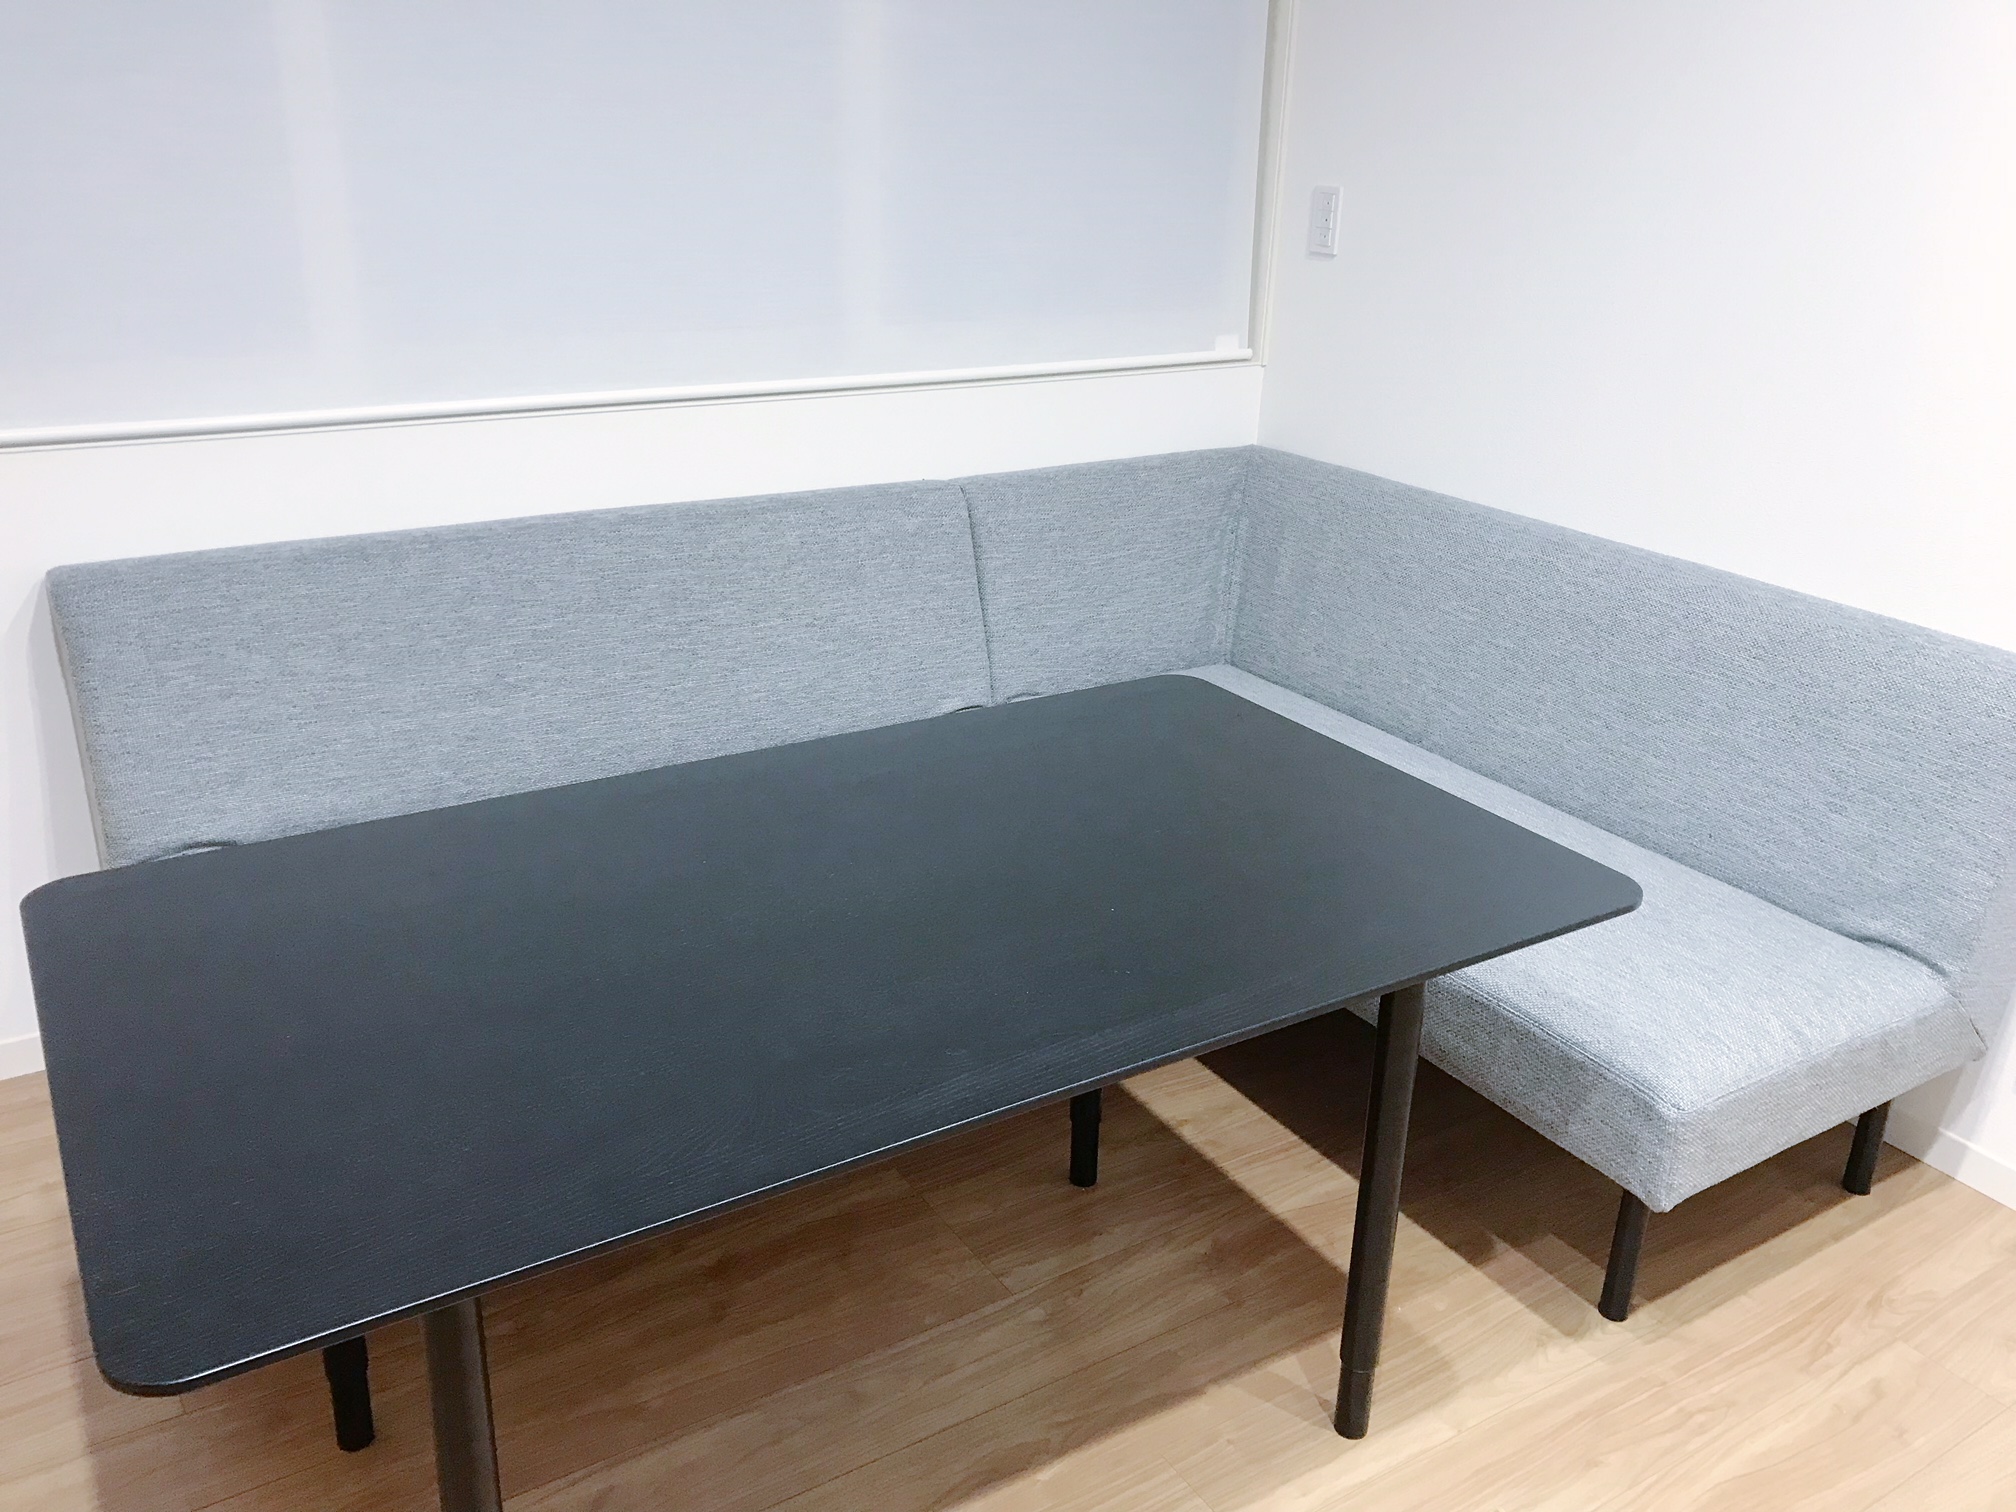 Ikeaのテーブルをソファダイニング用にカスタマイズした方法 べこメモランダム すっきり暮らす共働き生活 家づくりと暮らしのブログ